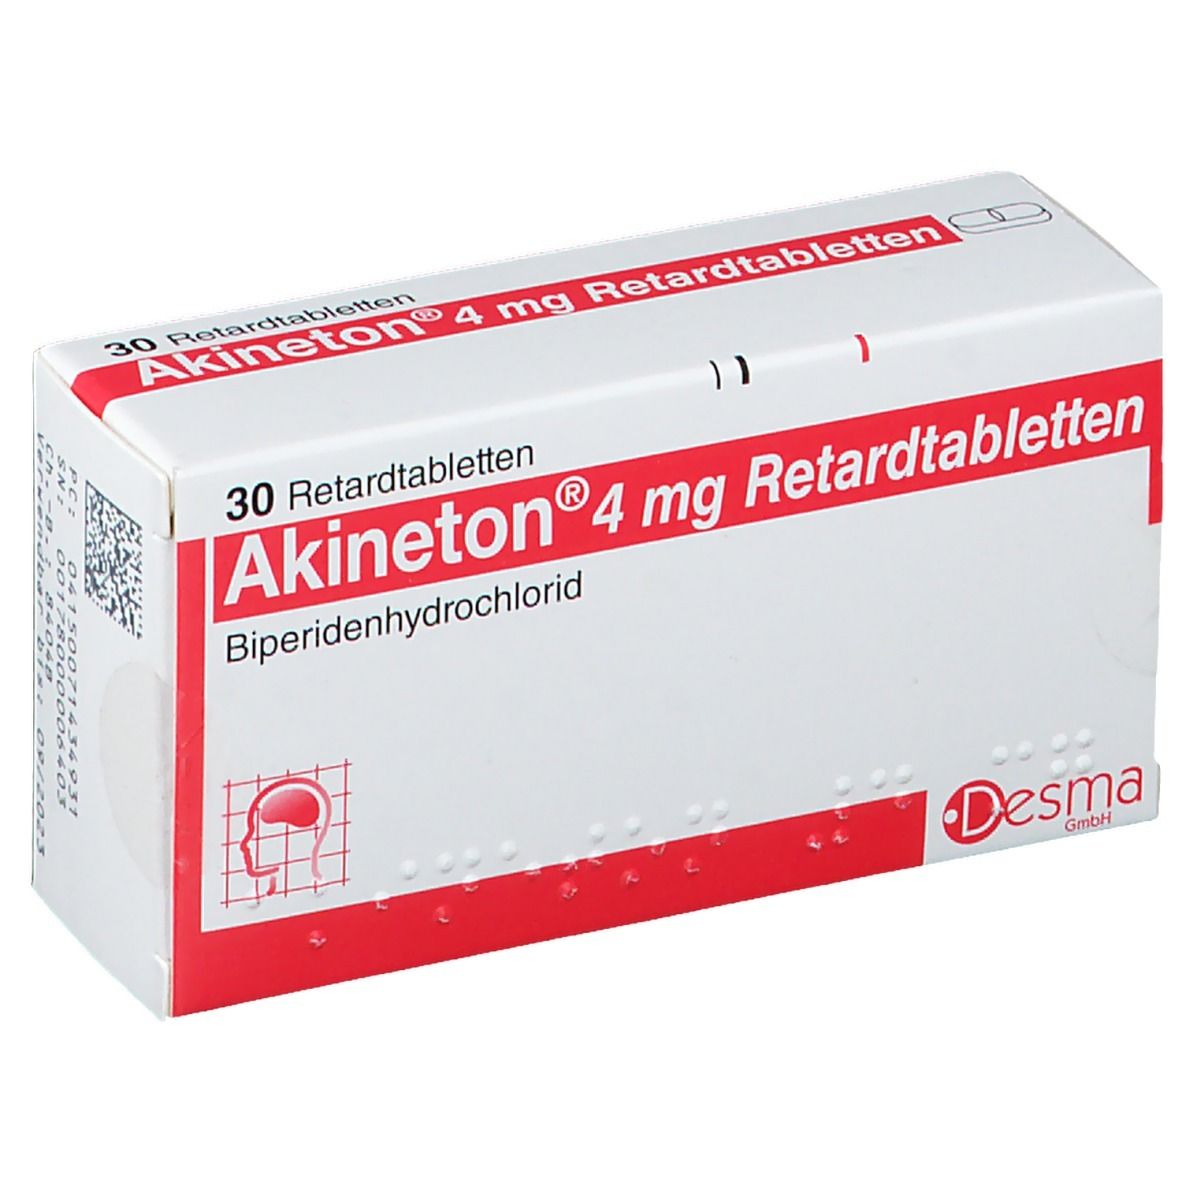 Akineton® 4 mg